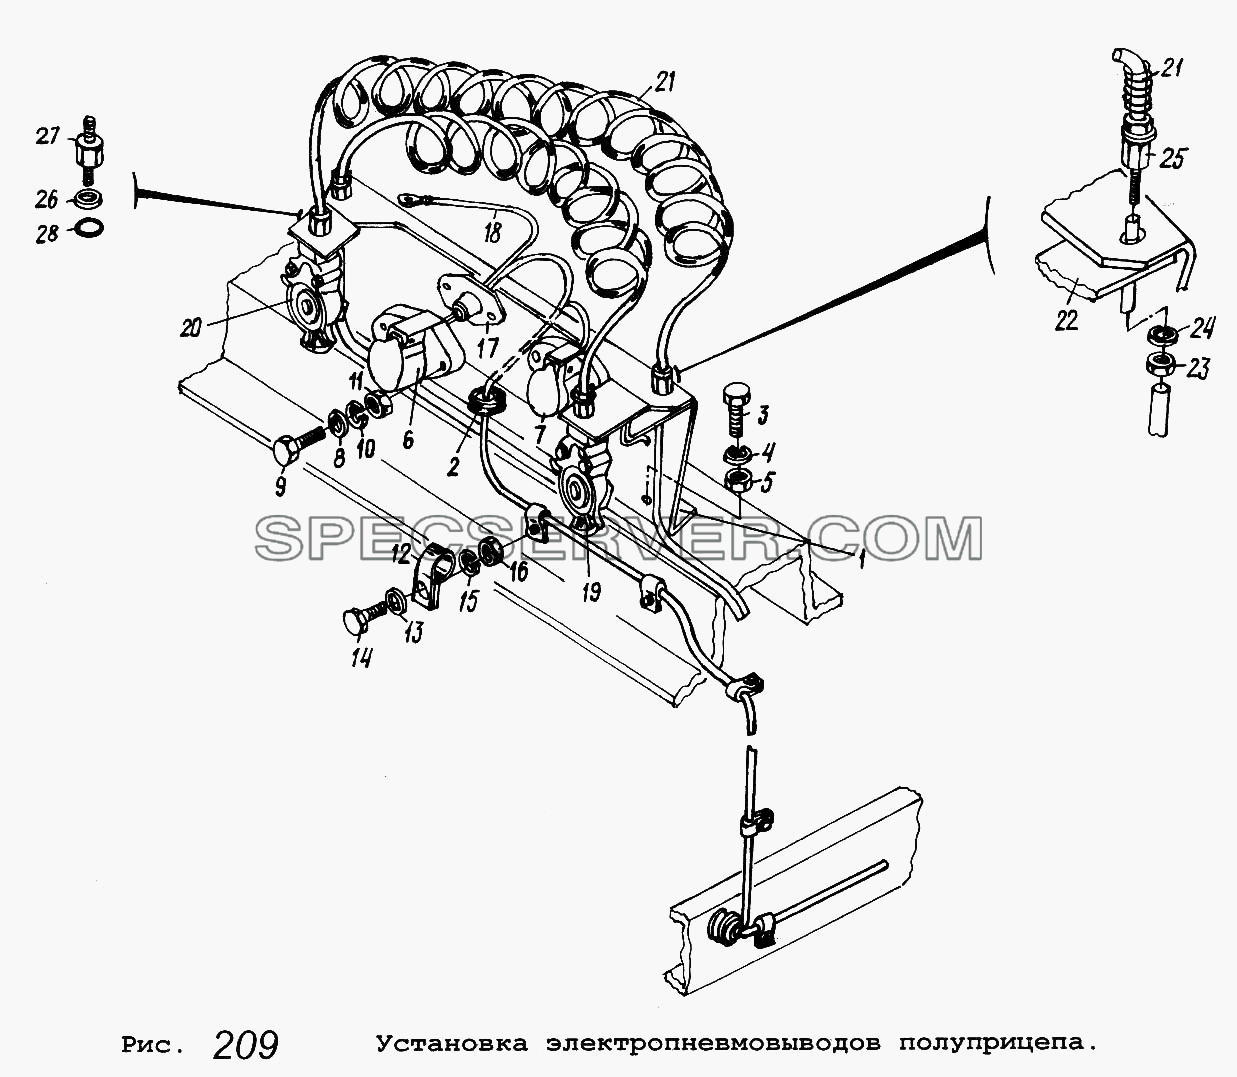 Установка электропневмовыводов полуприцепа для МАЗ-64229 (список запасных частей)